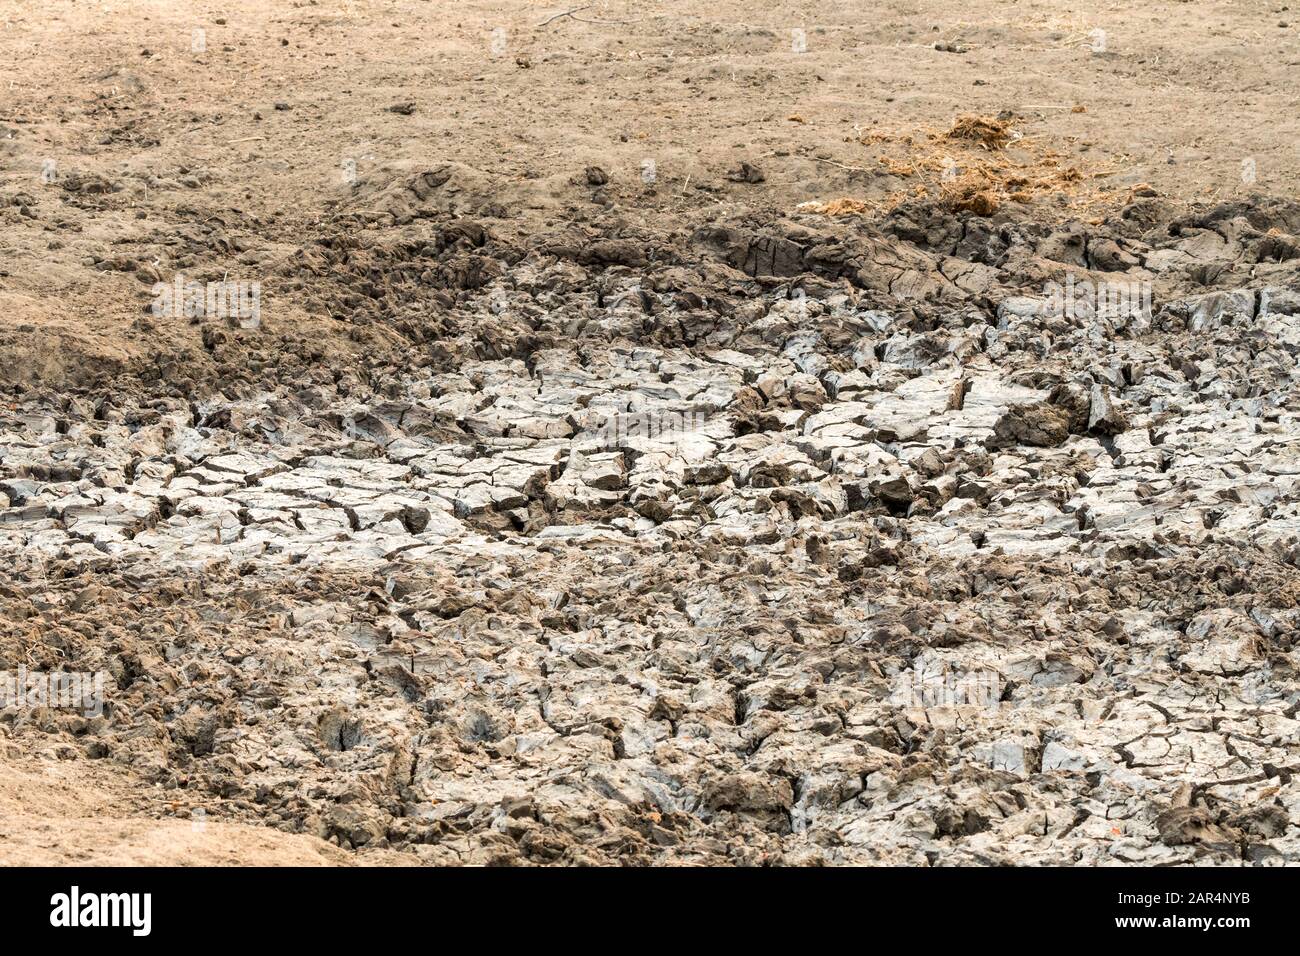 Ausgetrocknetes Wasserloch in der Natur im Kruger Nationalpark, Südafrika Konzept Wasserhaltung, Dürre, Wasser sparen, Klimawandel, globale Erwärmung Stockfoto